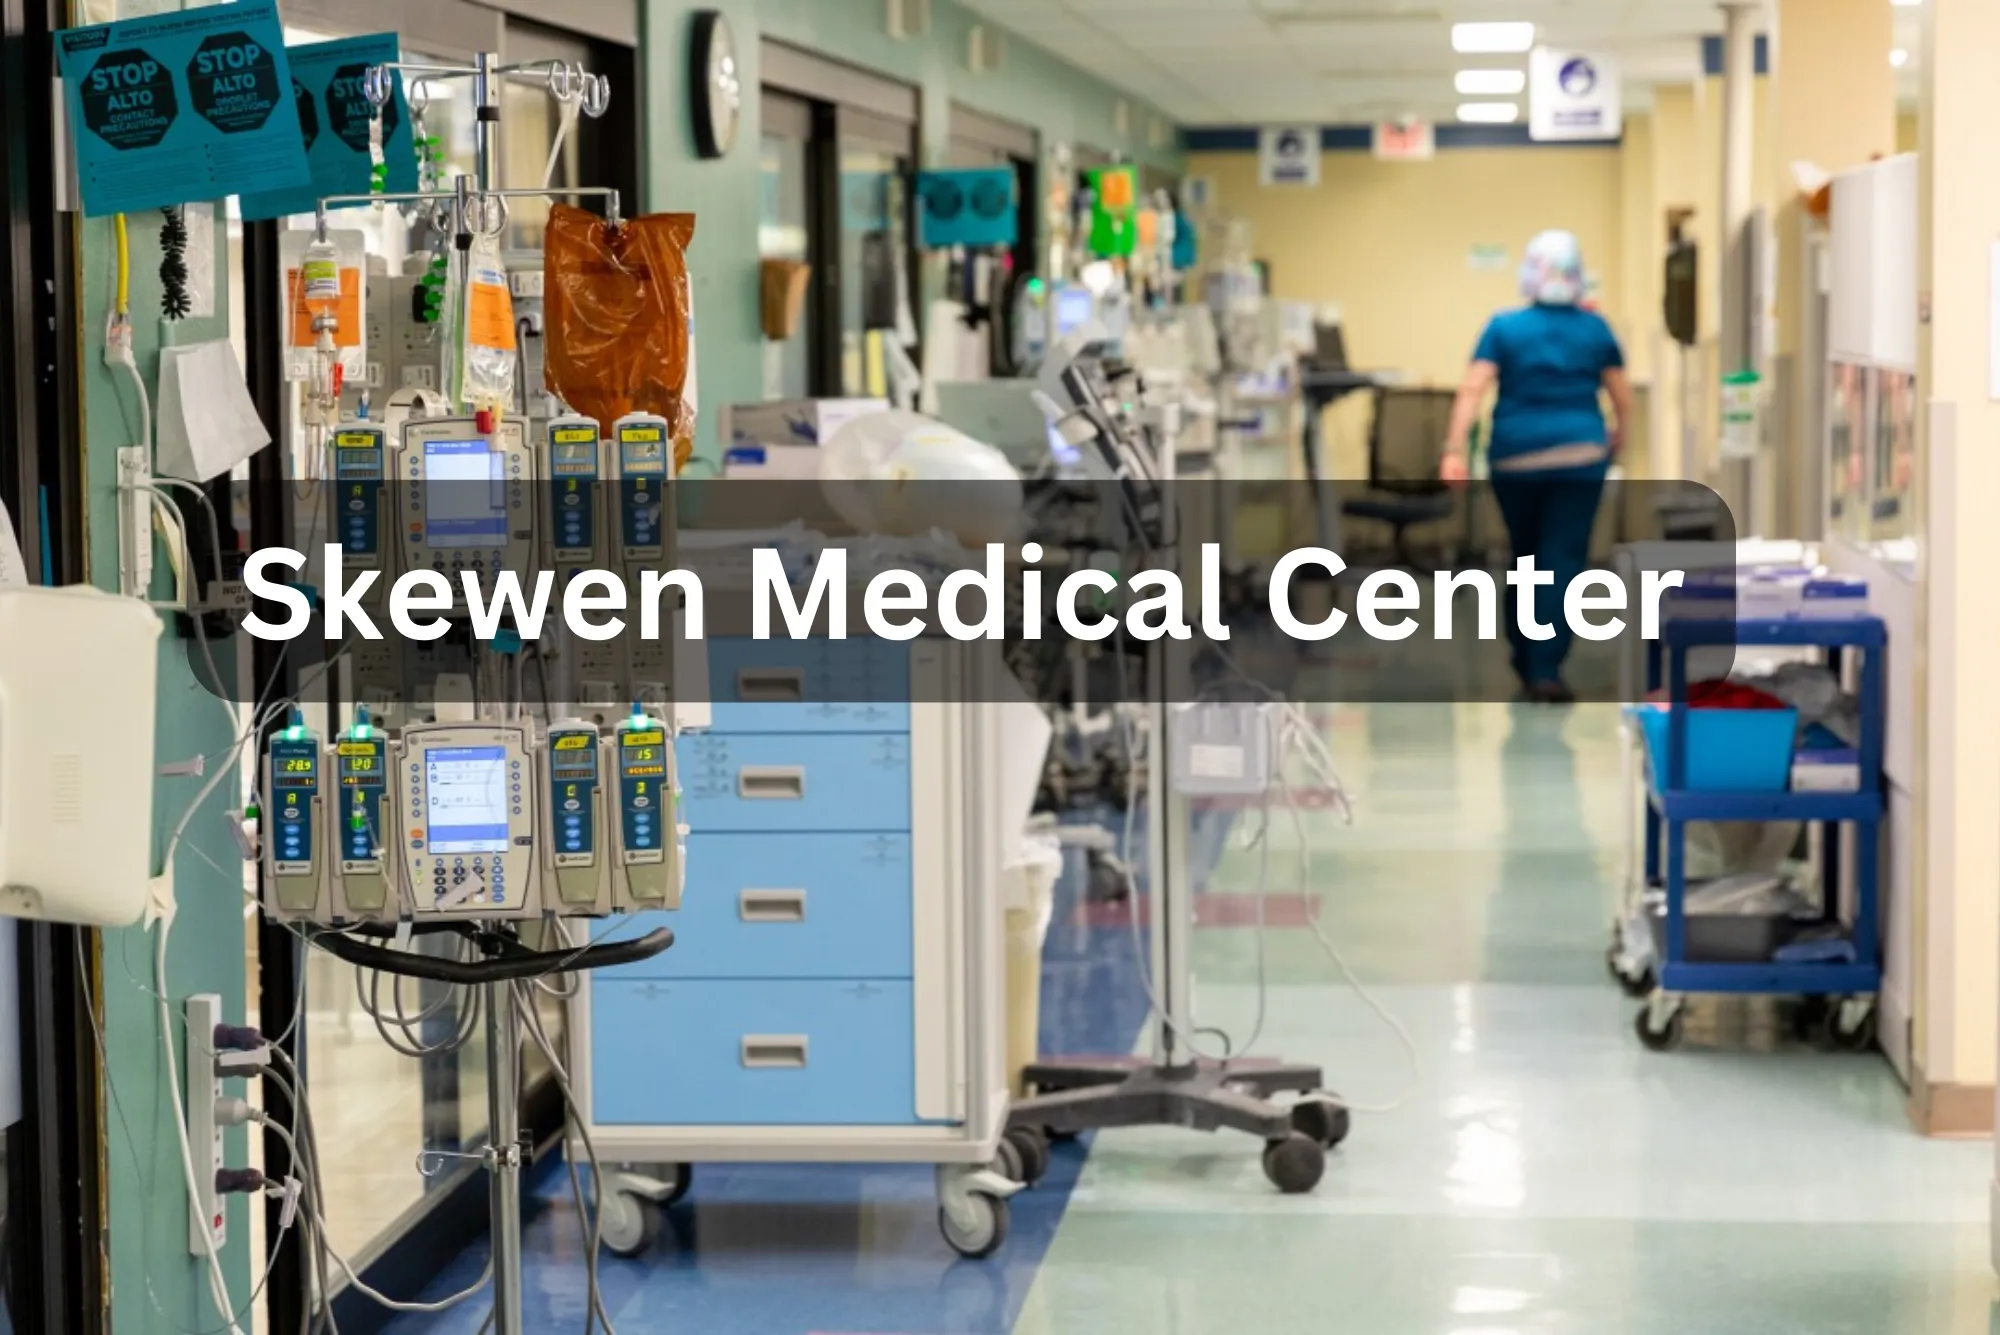 Skewen Medical Center Expert Healthcare Services